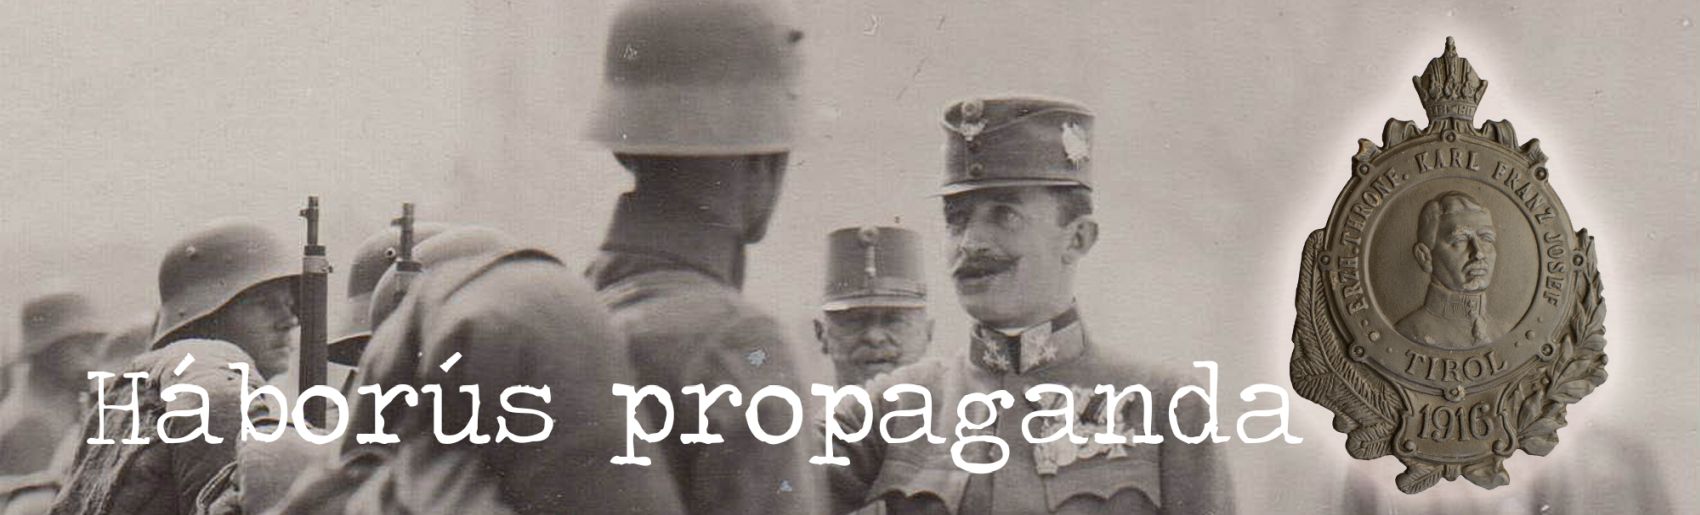 Háborús propaganda